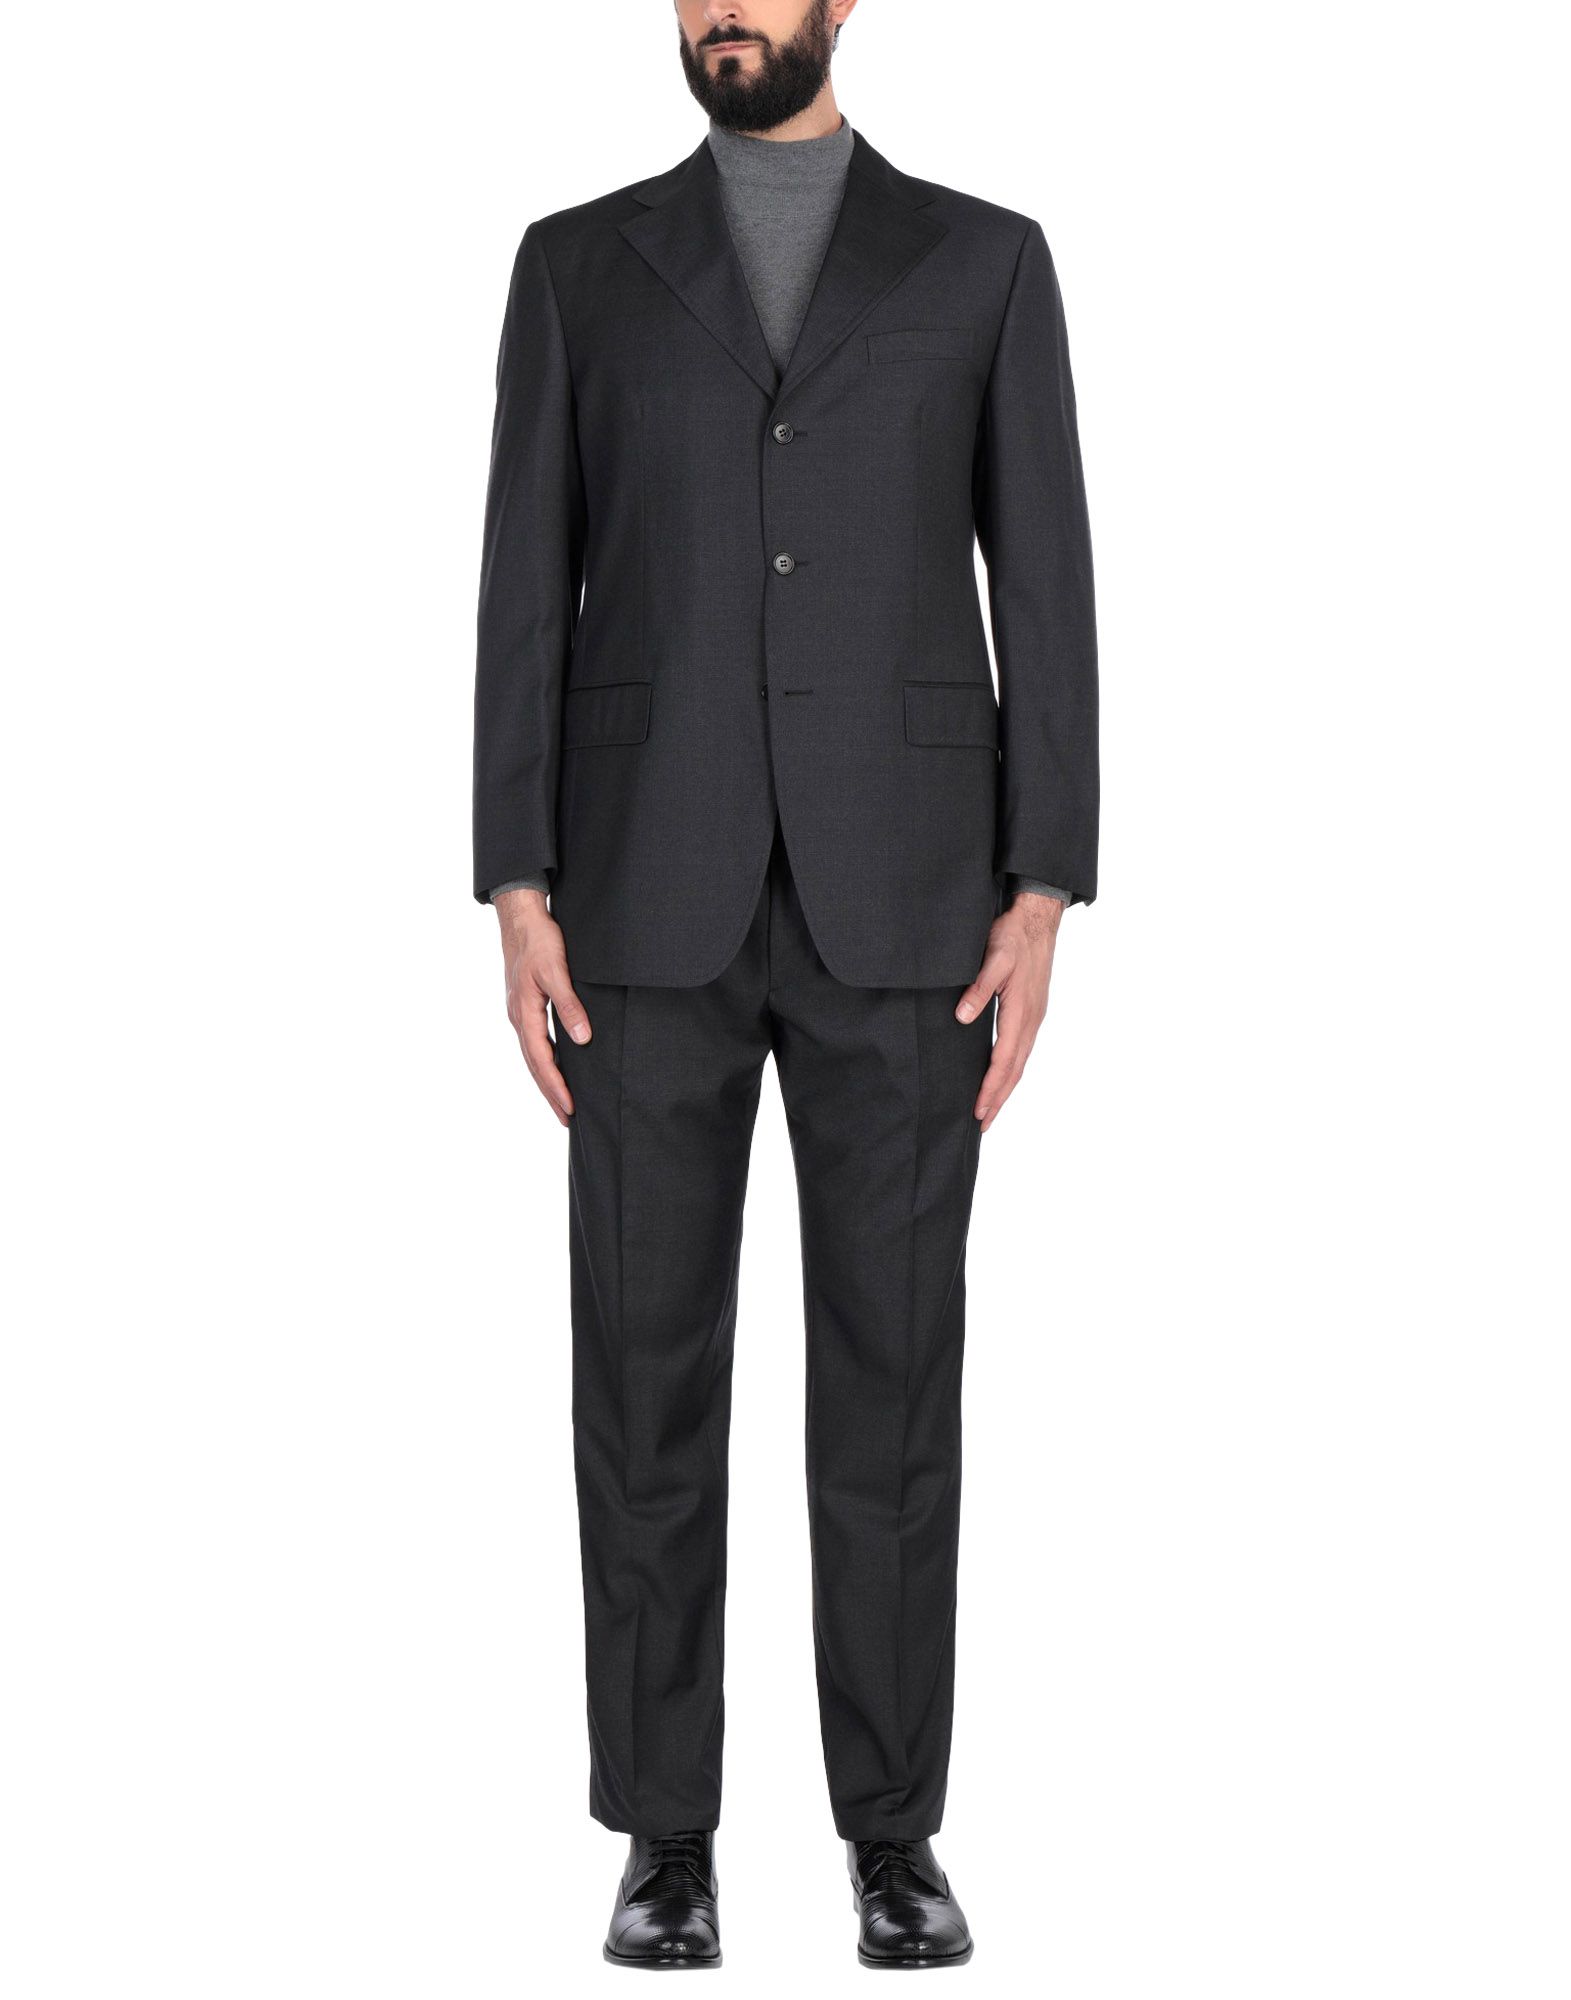 《送料無料》CANTARELLI メンズ スーツ スチールグレー 48 バージンウール 100%